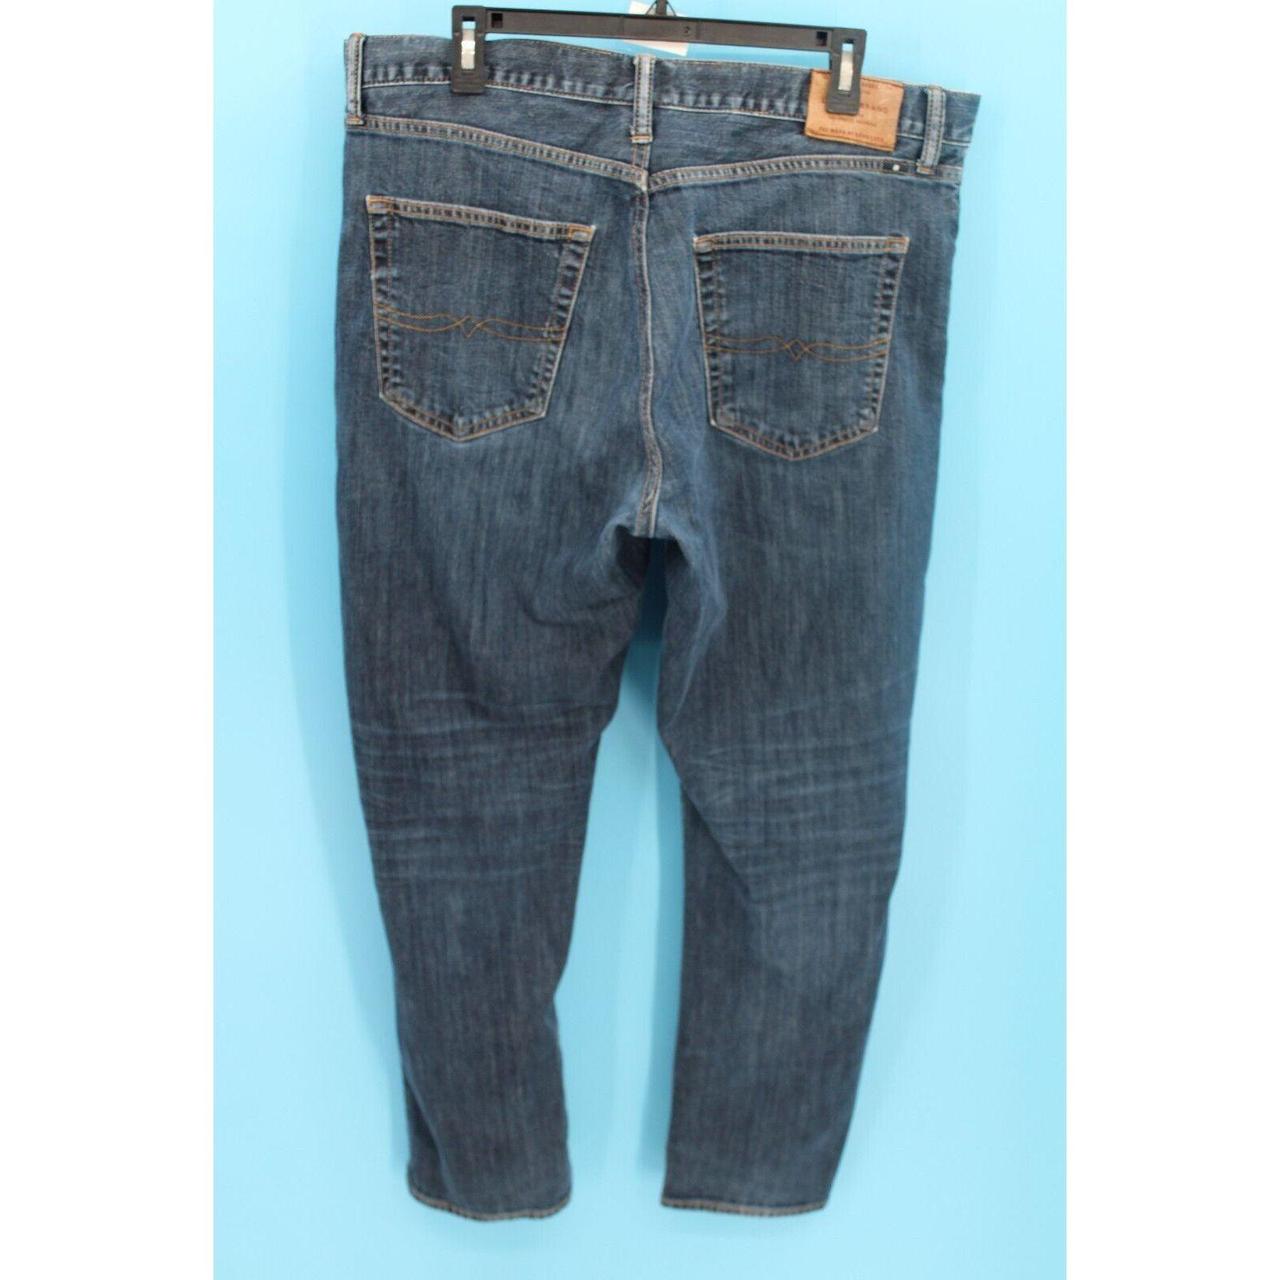 Lucky Brand 410 Athletic Slim Jeans Men's Size 38/32 Blue Denim Straight  Leg